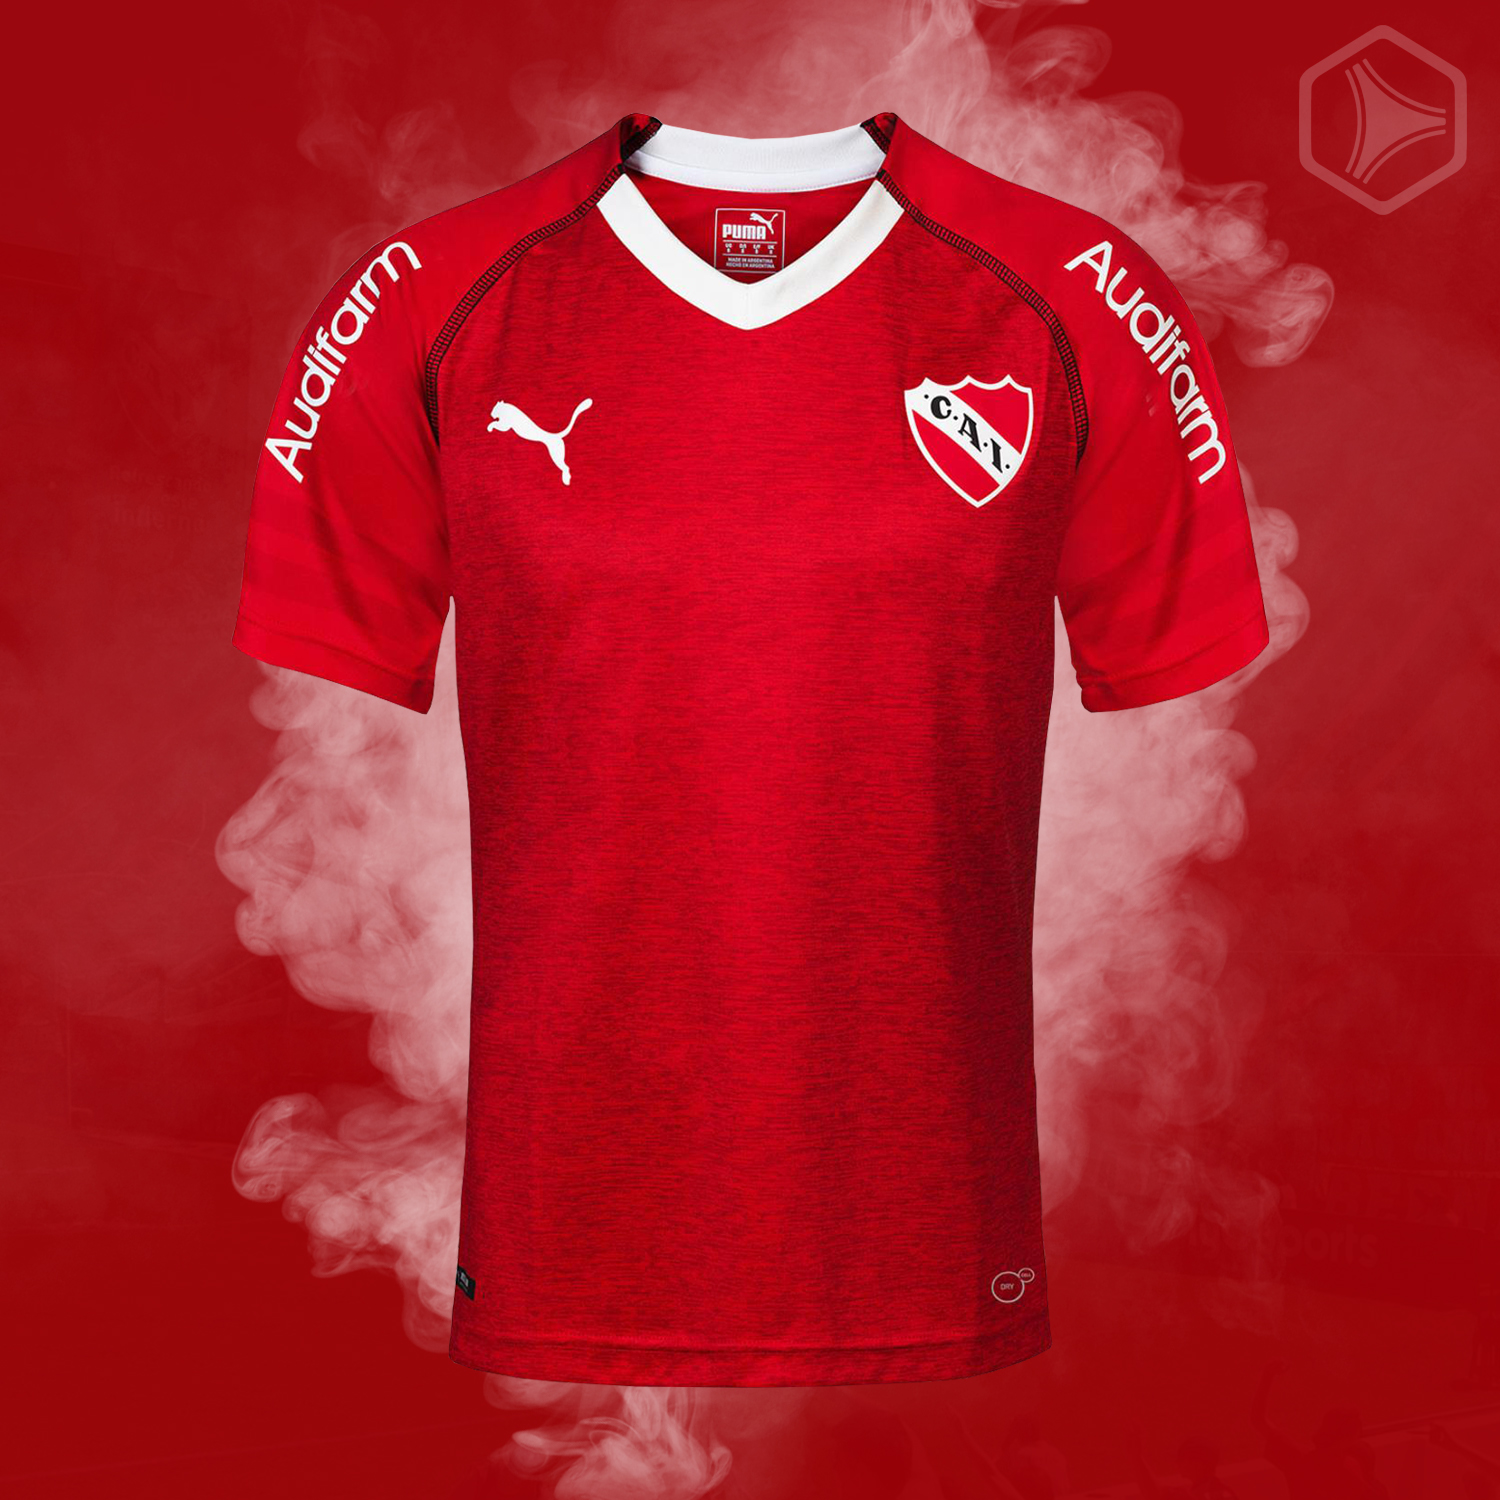 Camiseta titular PUMA de Independiente 2018 19